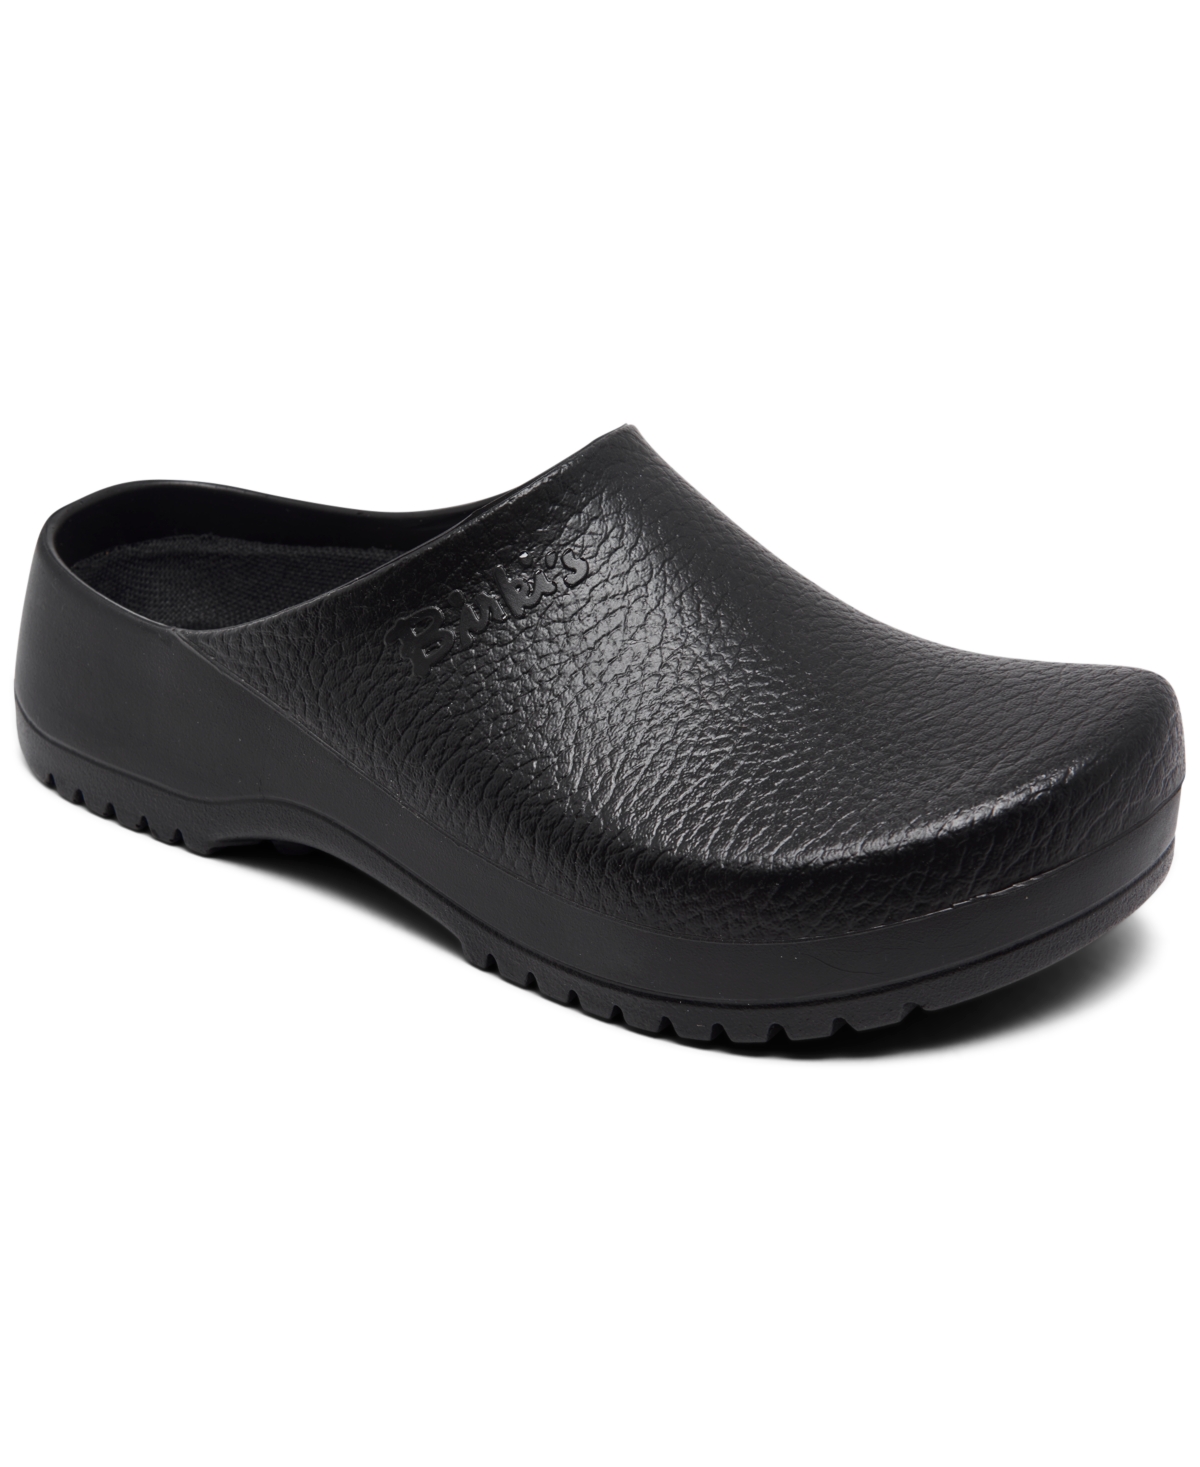 Men's Super-Birki Clog Sandals from Finish Line - Black